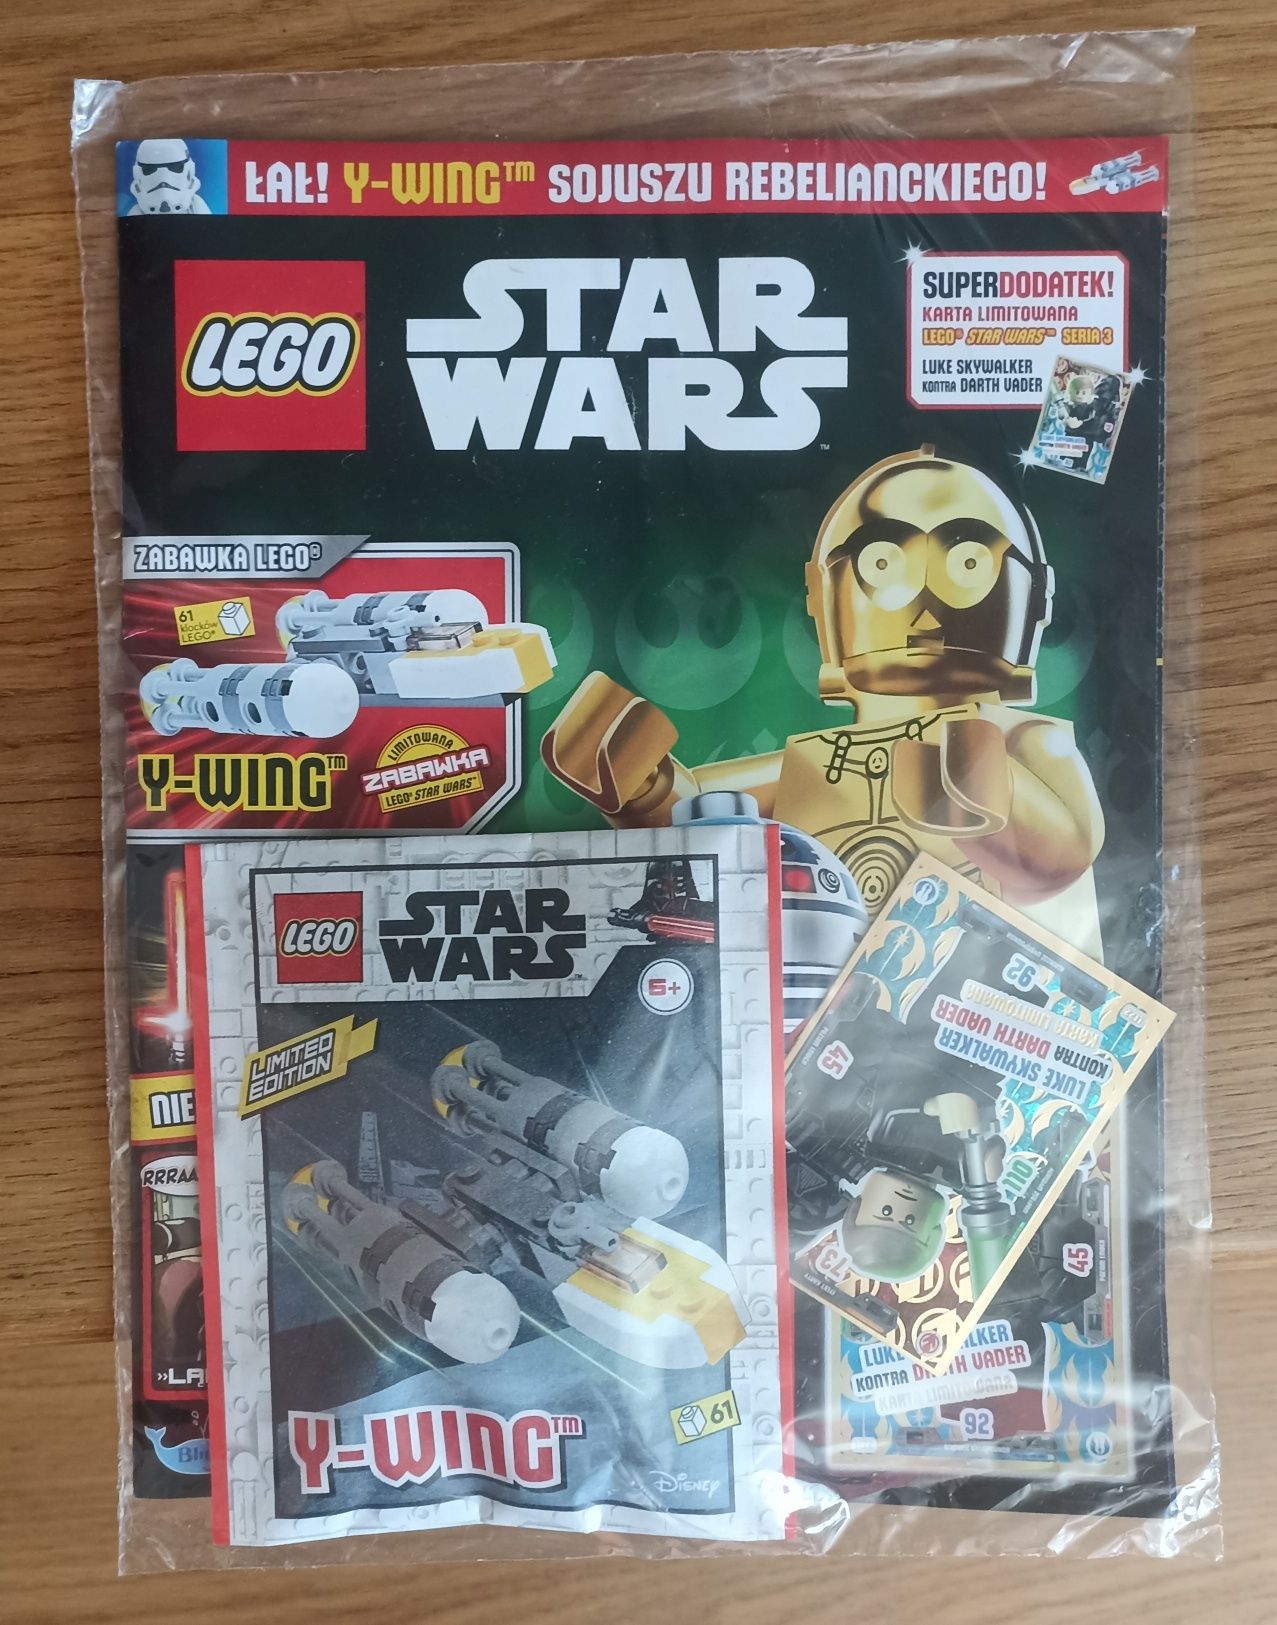 Gazeta, gazetka LEGO Star Wars, klocki statek Y-WING